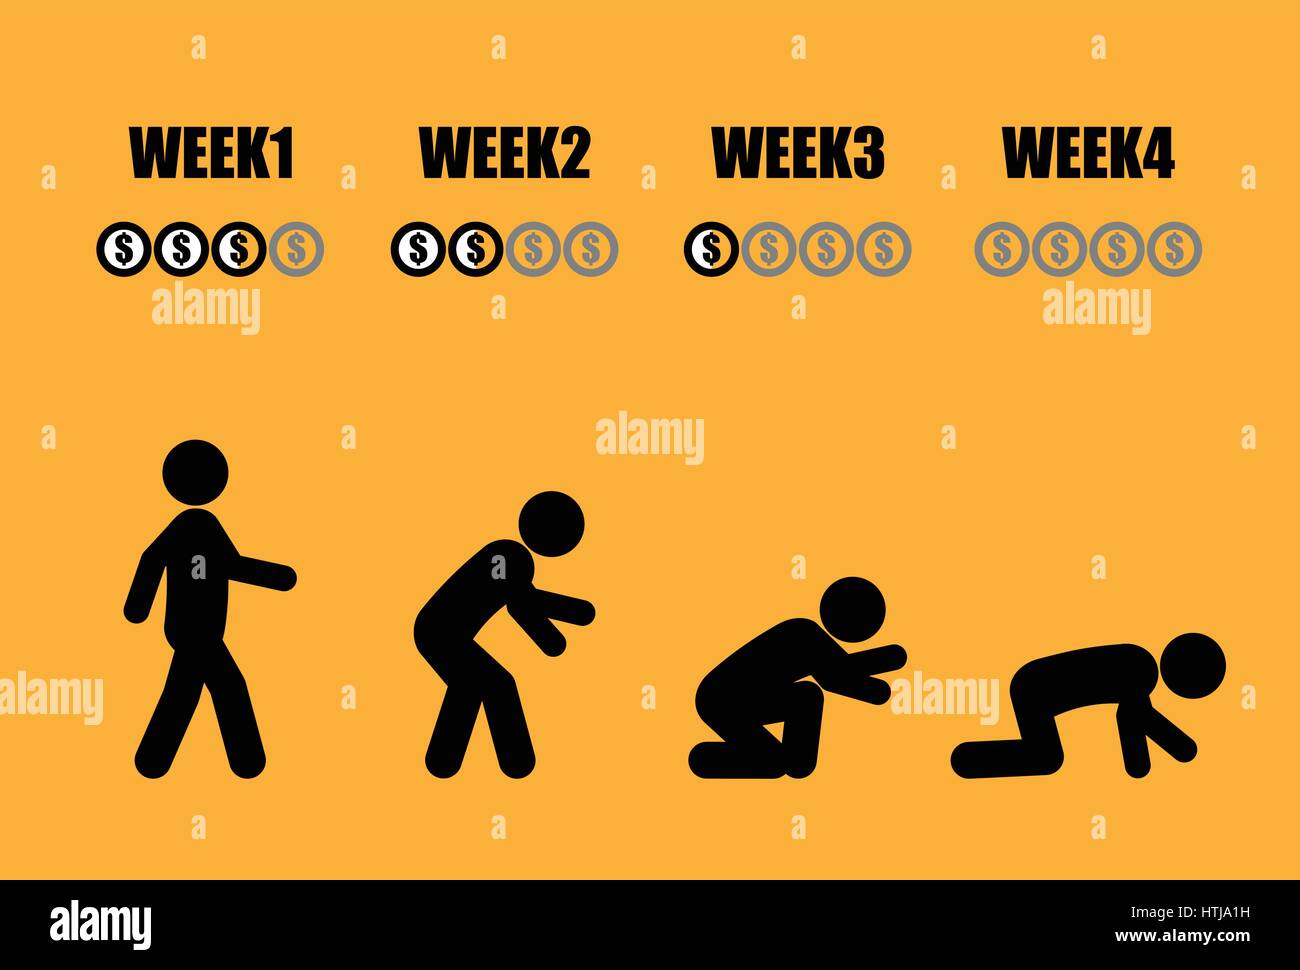 Salaire mensuel Résumé du cycle de vie de l'homme dans 4 semaines en concept stick figure noir sur fond jaune style Illustration de Vecteur